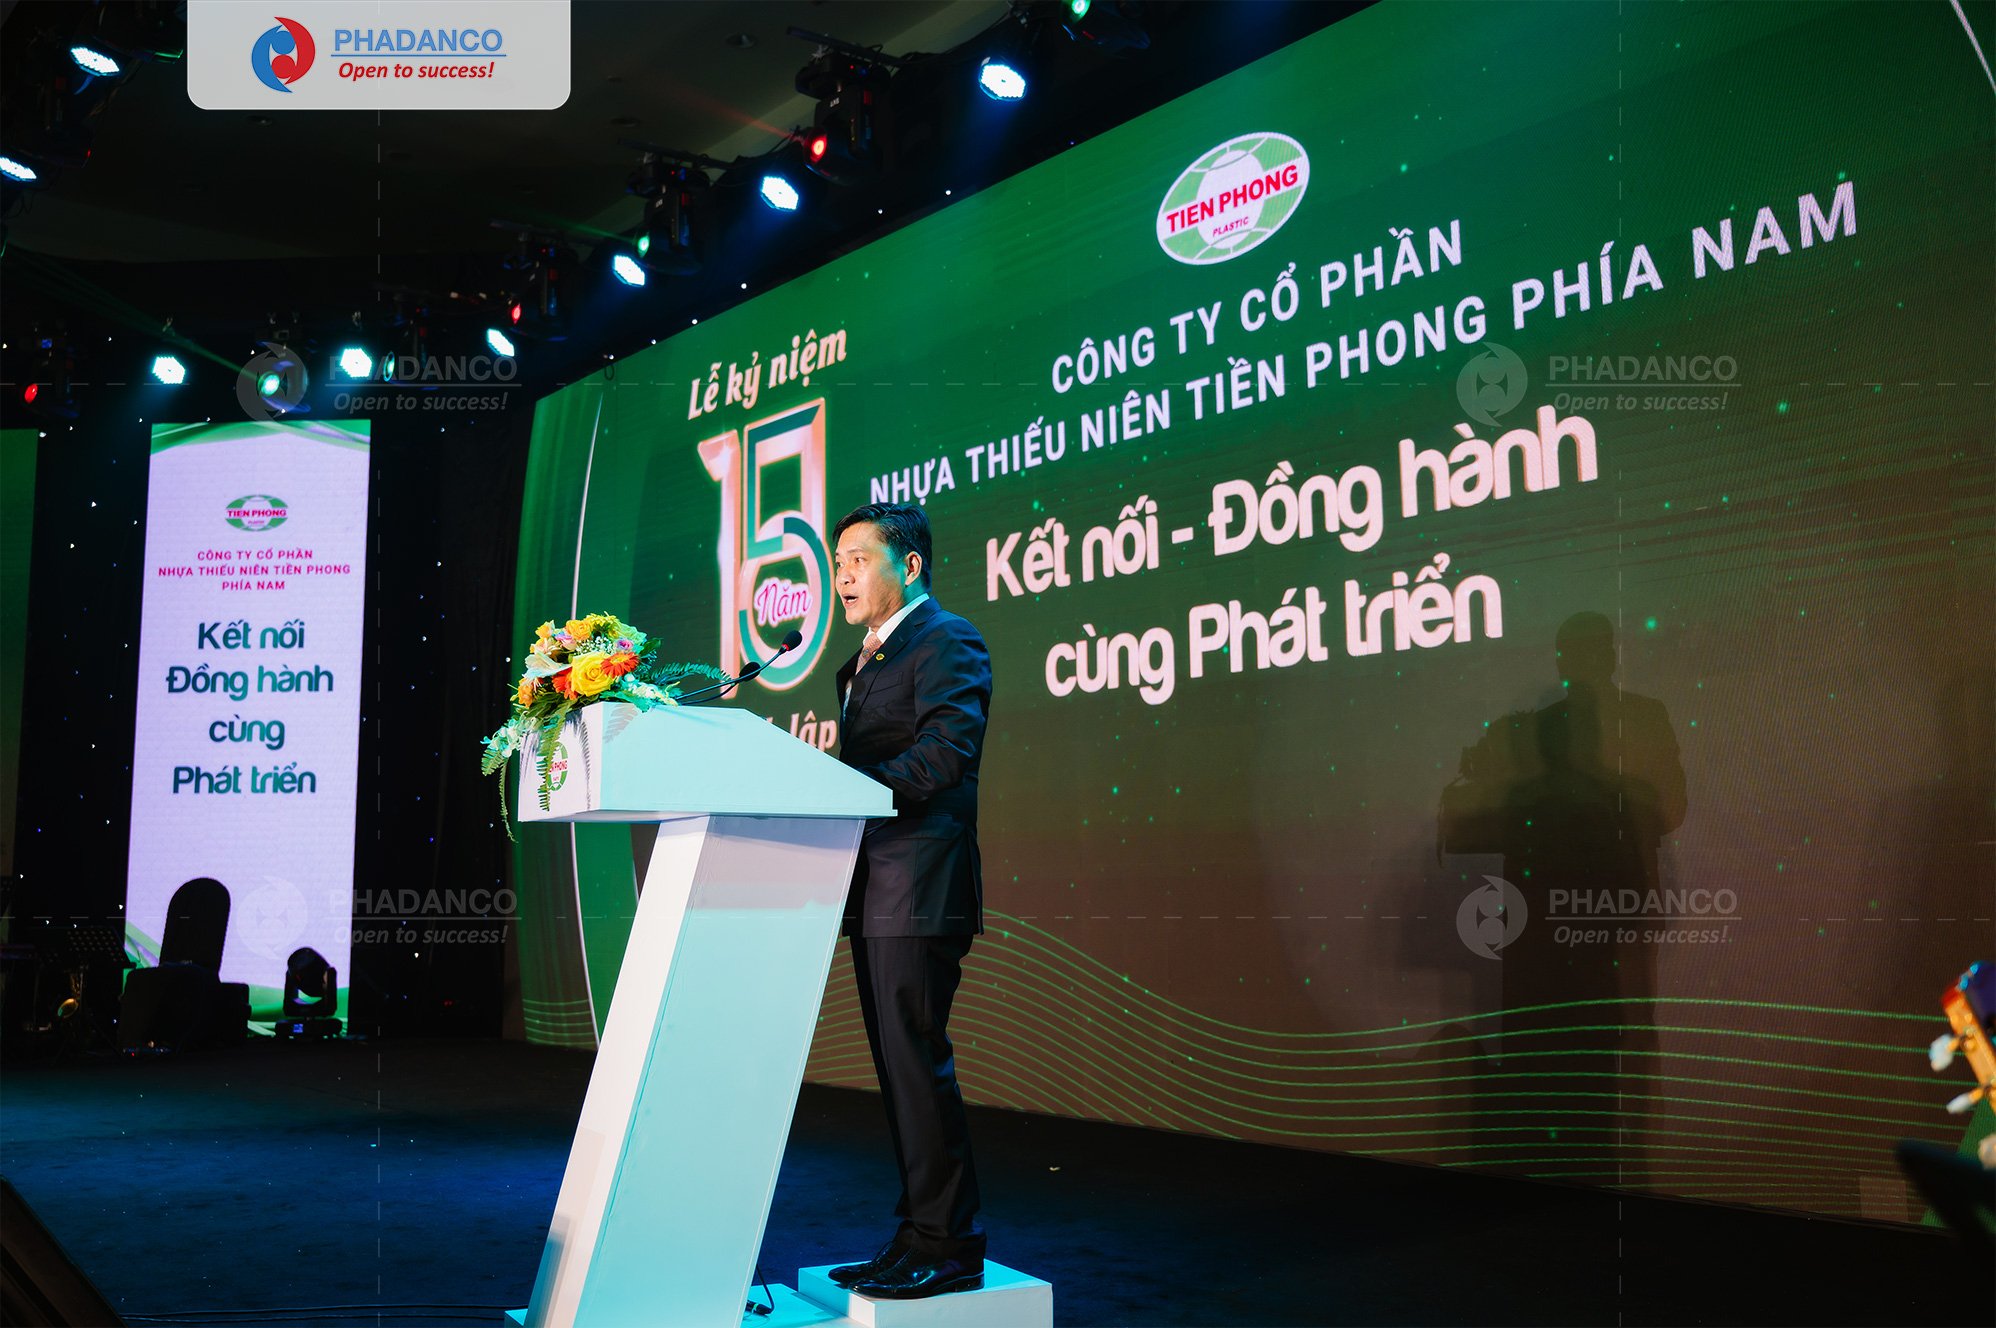 Hình ảnh Ông HỒ PHI HẢI - Tổng Giám đốc - Công ty Cổ phần Nhựa Thiếu Niên Tiền Phong phía Nam chia sẻ về hành trình 15 năm đã đi qua.